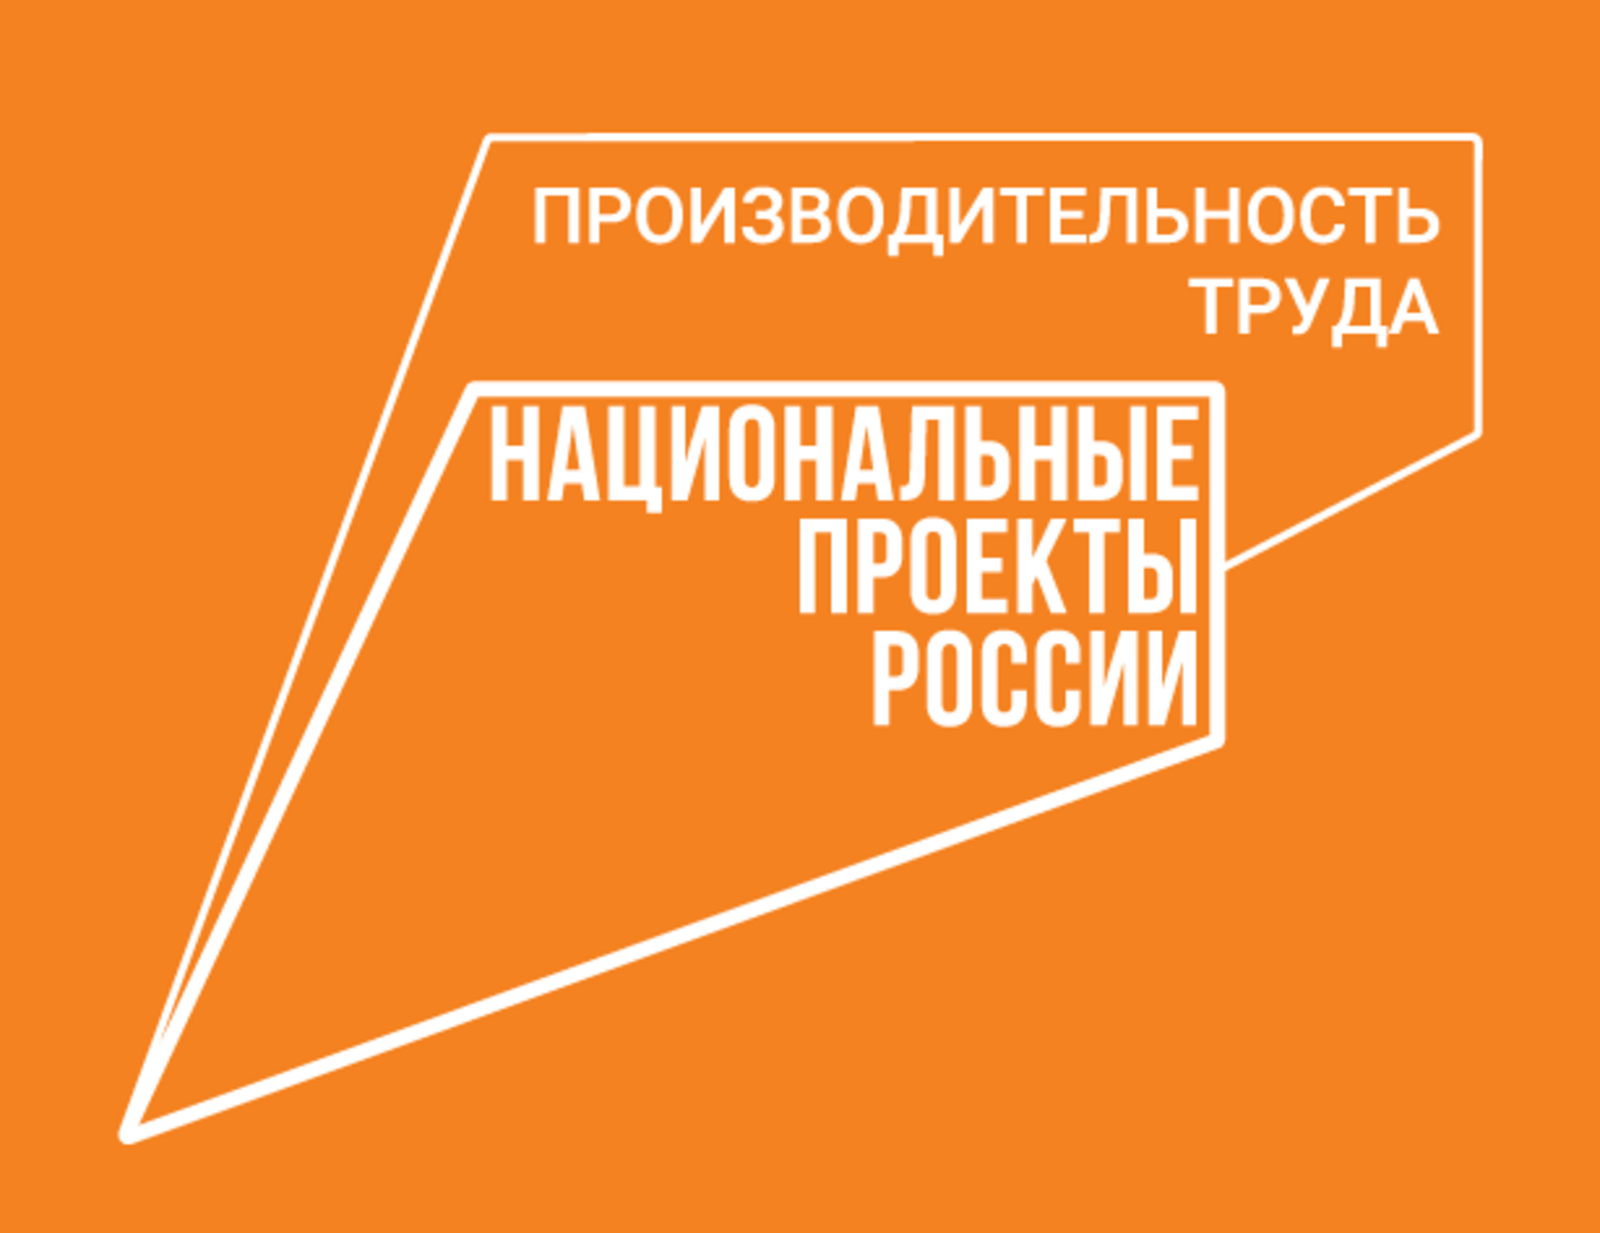 Предприятия-участники нацпроекта «Производительность труда» Башкортостана могут снова подать заявки на обучение по программе «Лидеры производительности»